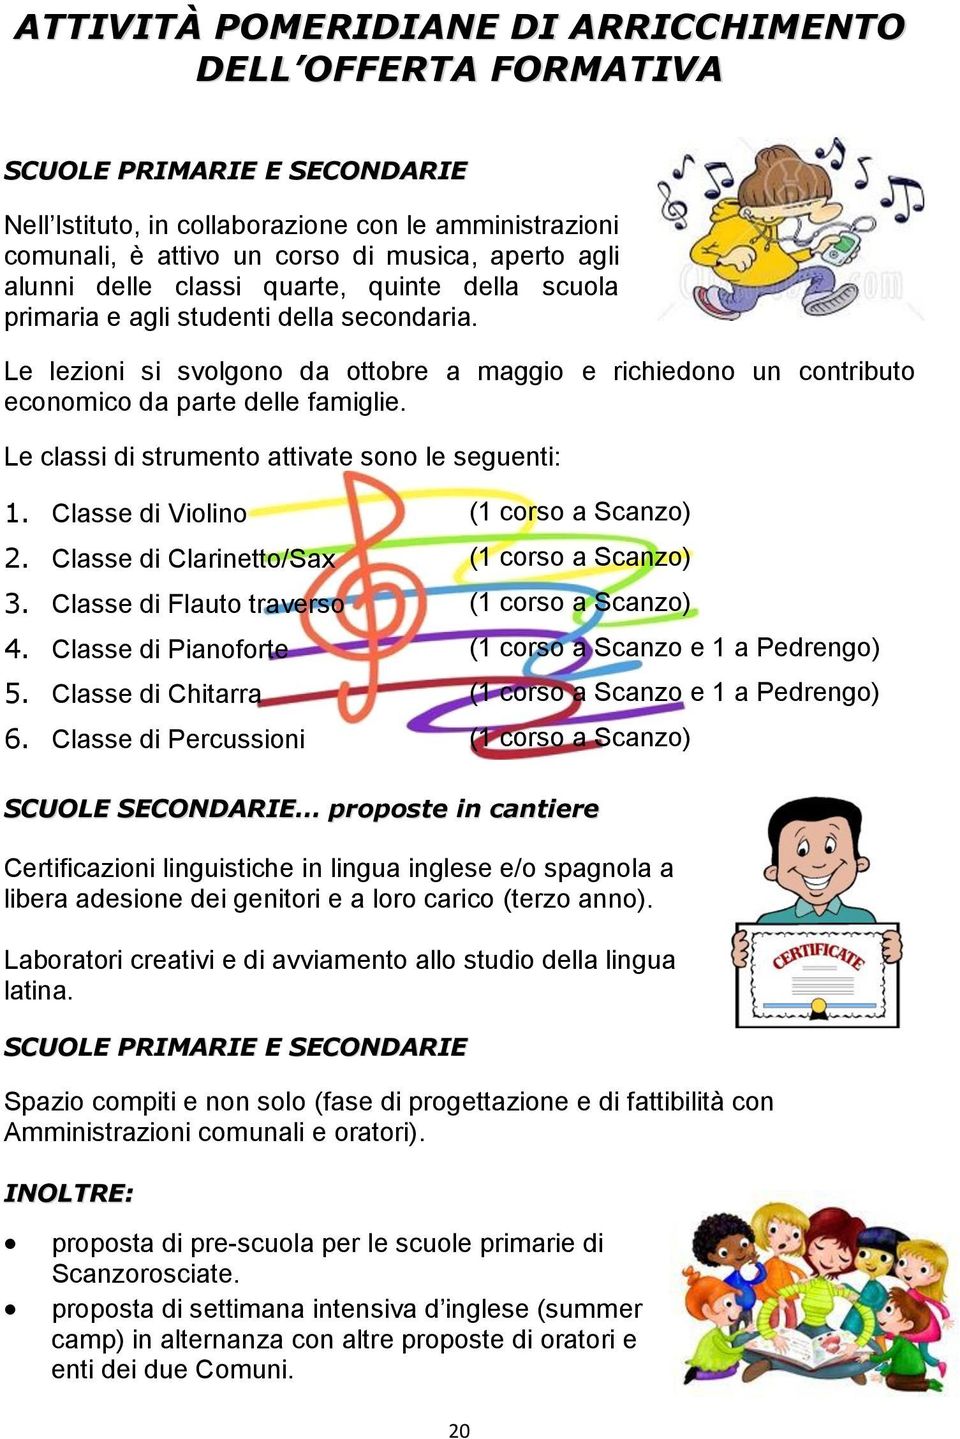 Le classi di strumento attivate sono le seguenti: 1. Classe di Violino (1 corso a Scanzo) 2. Classe di Clarinetto/Sax (1 corso a Scanzo) 3. Classe di Flauto traverso (1 corso a Scanzo) 4.